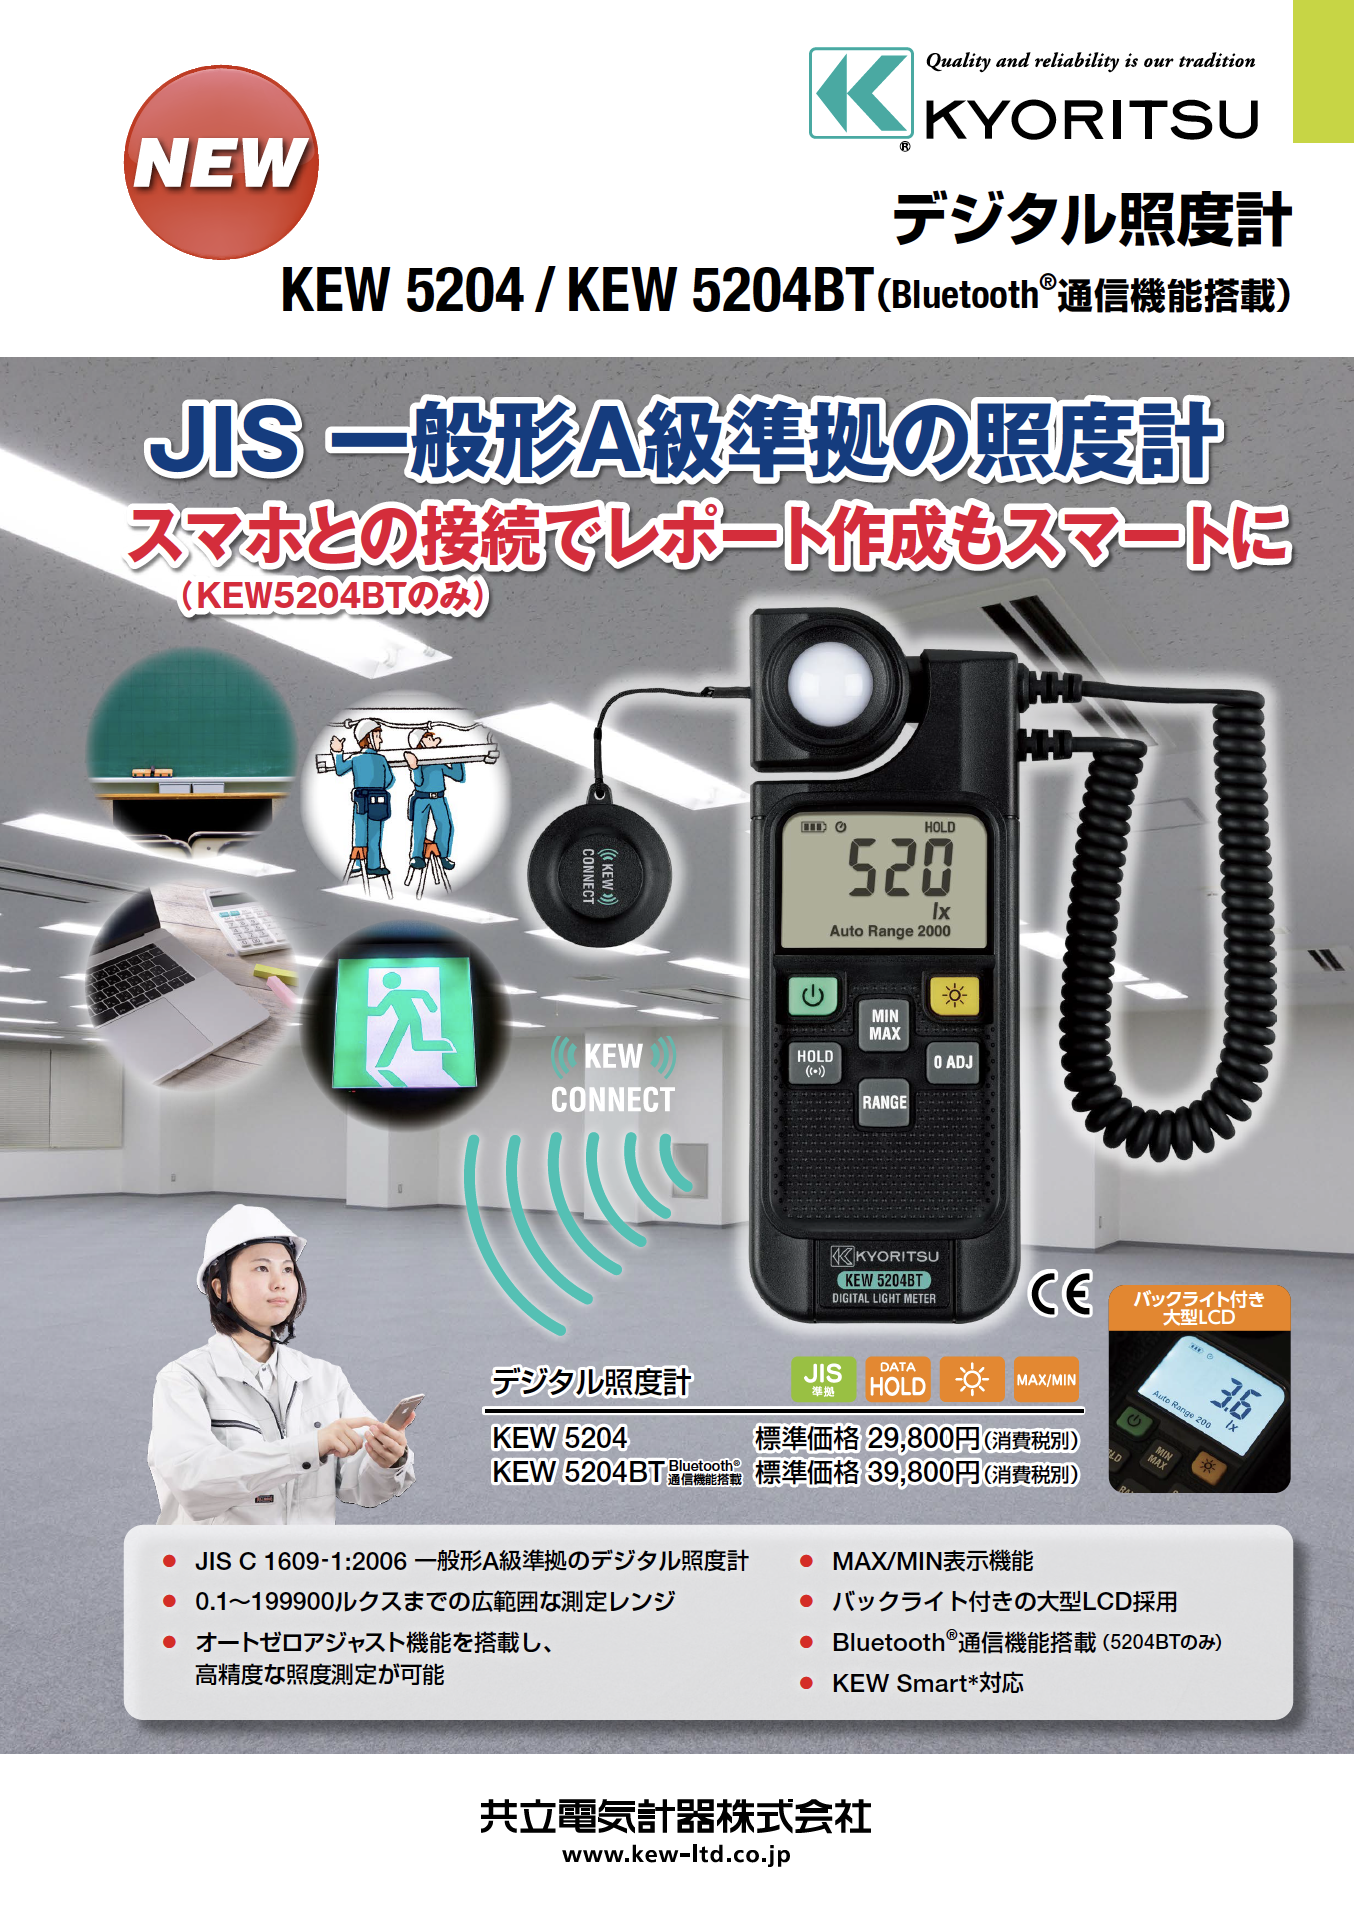 共立電気計器】JIS一般形A級準拠の照度計『デジタル照度計 KEW 5204